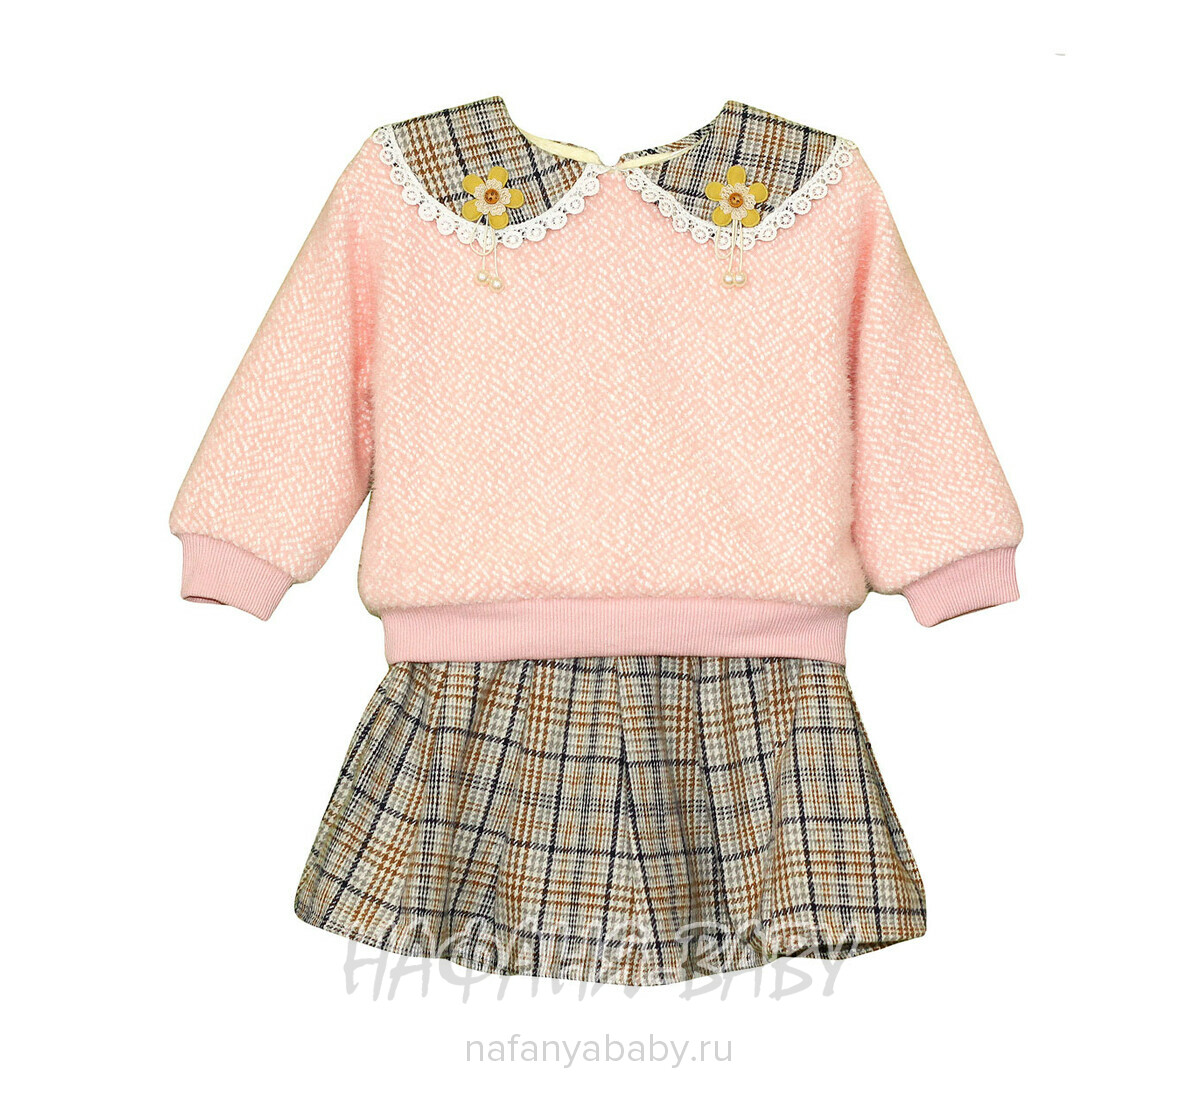 Детский костюм для девочки MYY, купить в интернет магазине Нафаня. арт: 1054.